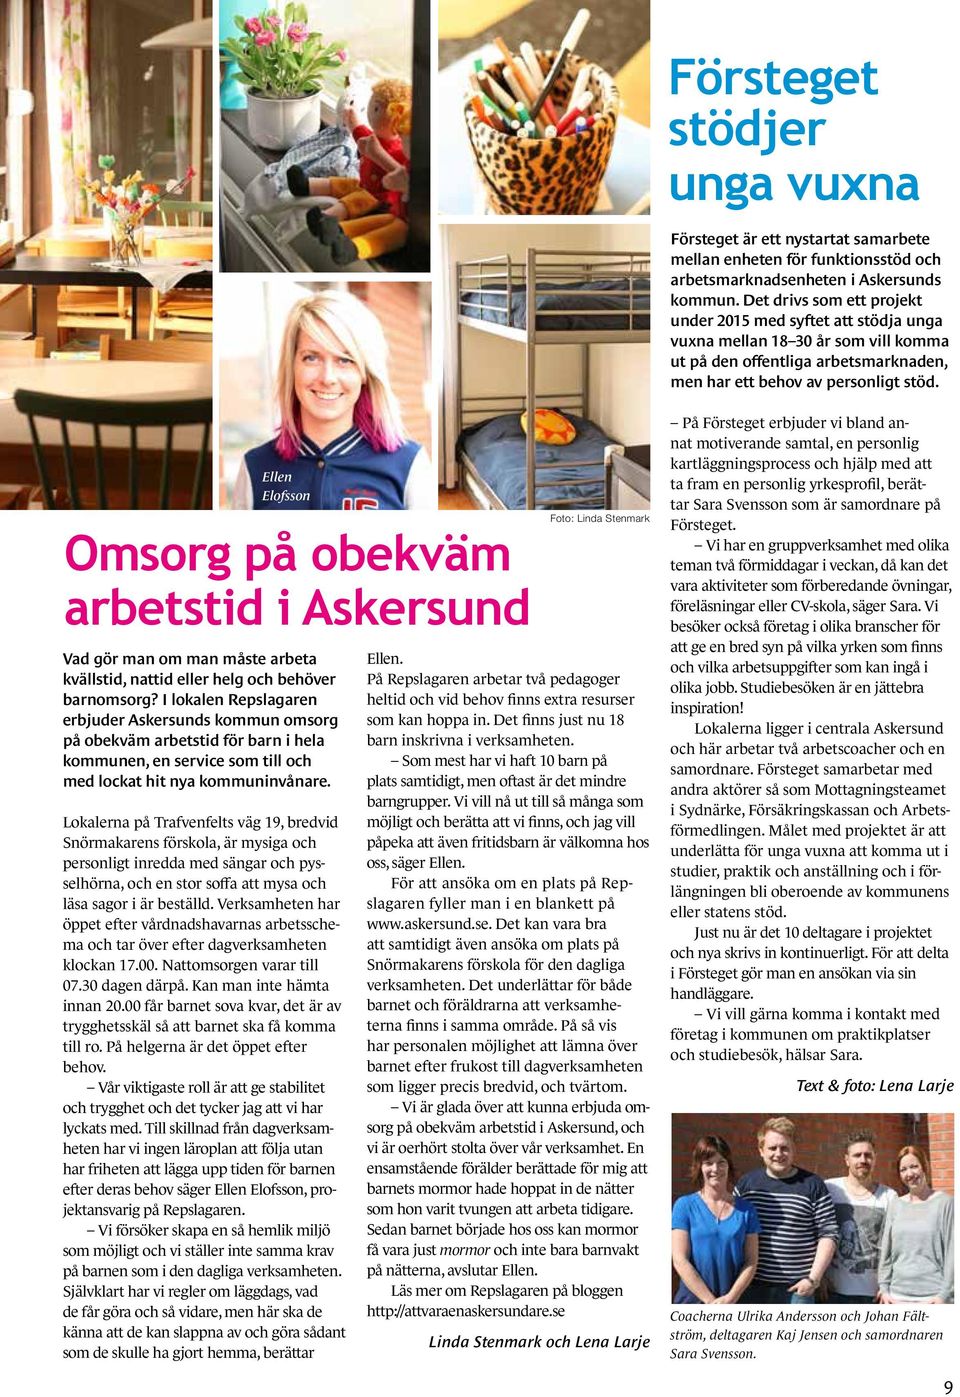 Ellen Elofsson Omsorg på obekväm arbetstid i Askersund Vad gör man om man måste arbeta kvällstid, nattid eller helg och behöver barnomsorg?